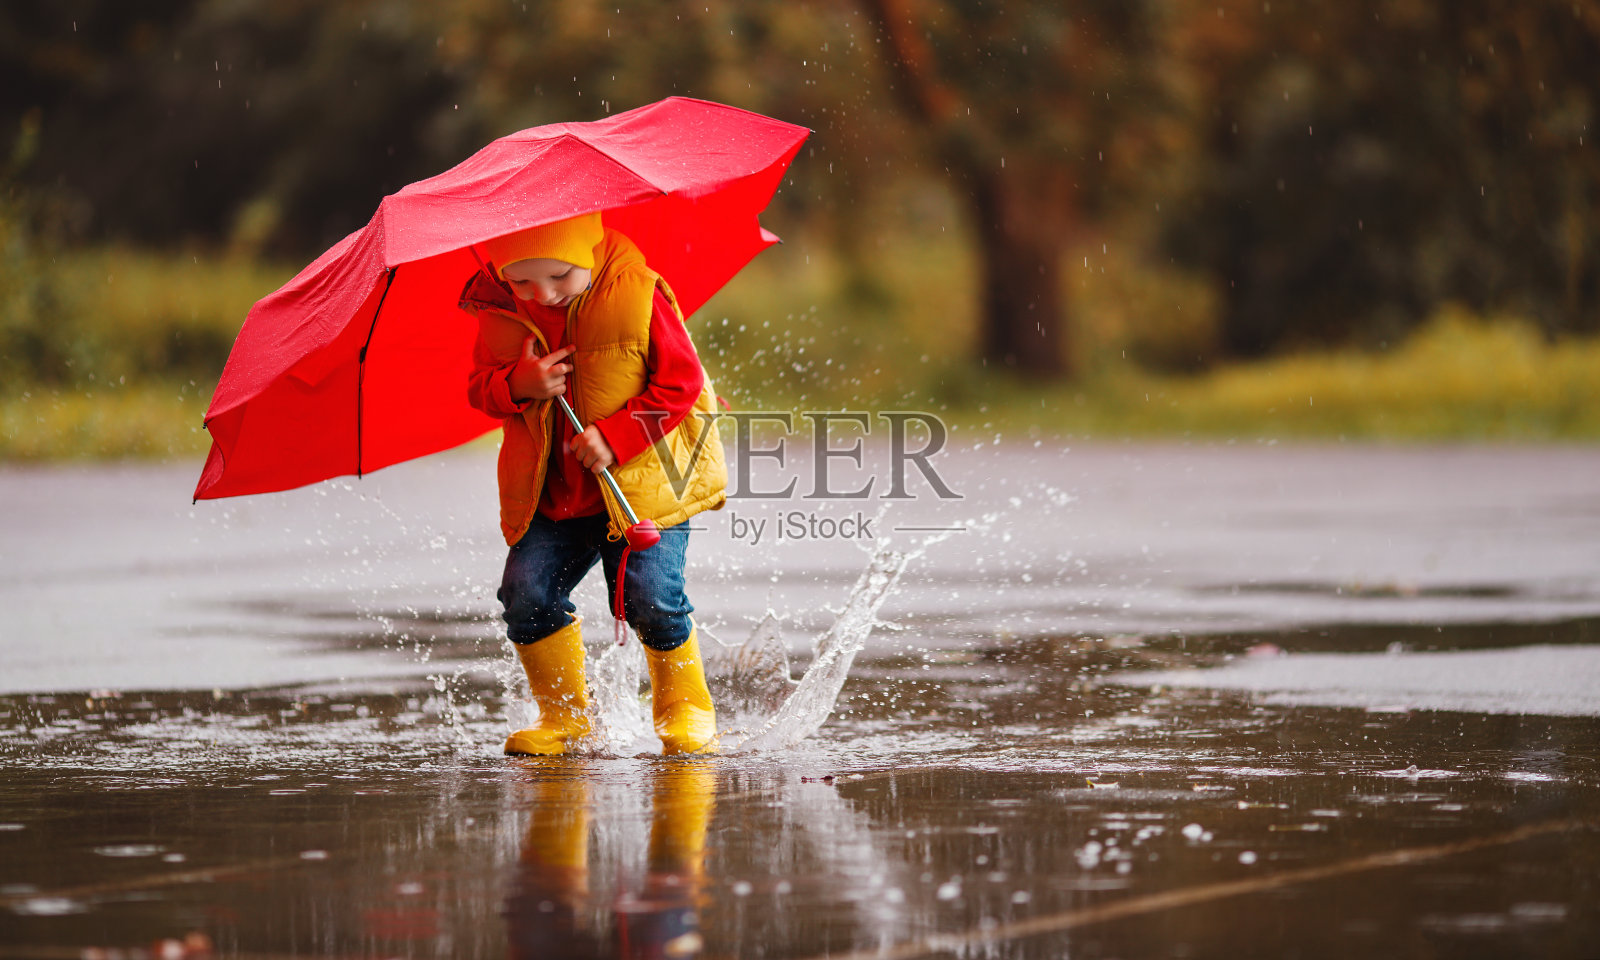 打雨伞的小男孩图片素材-编号26811363-图行天下